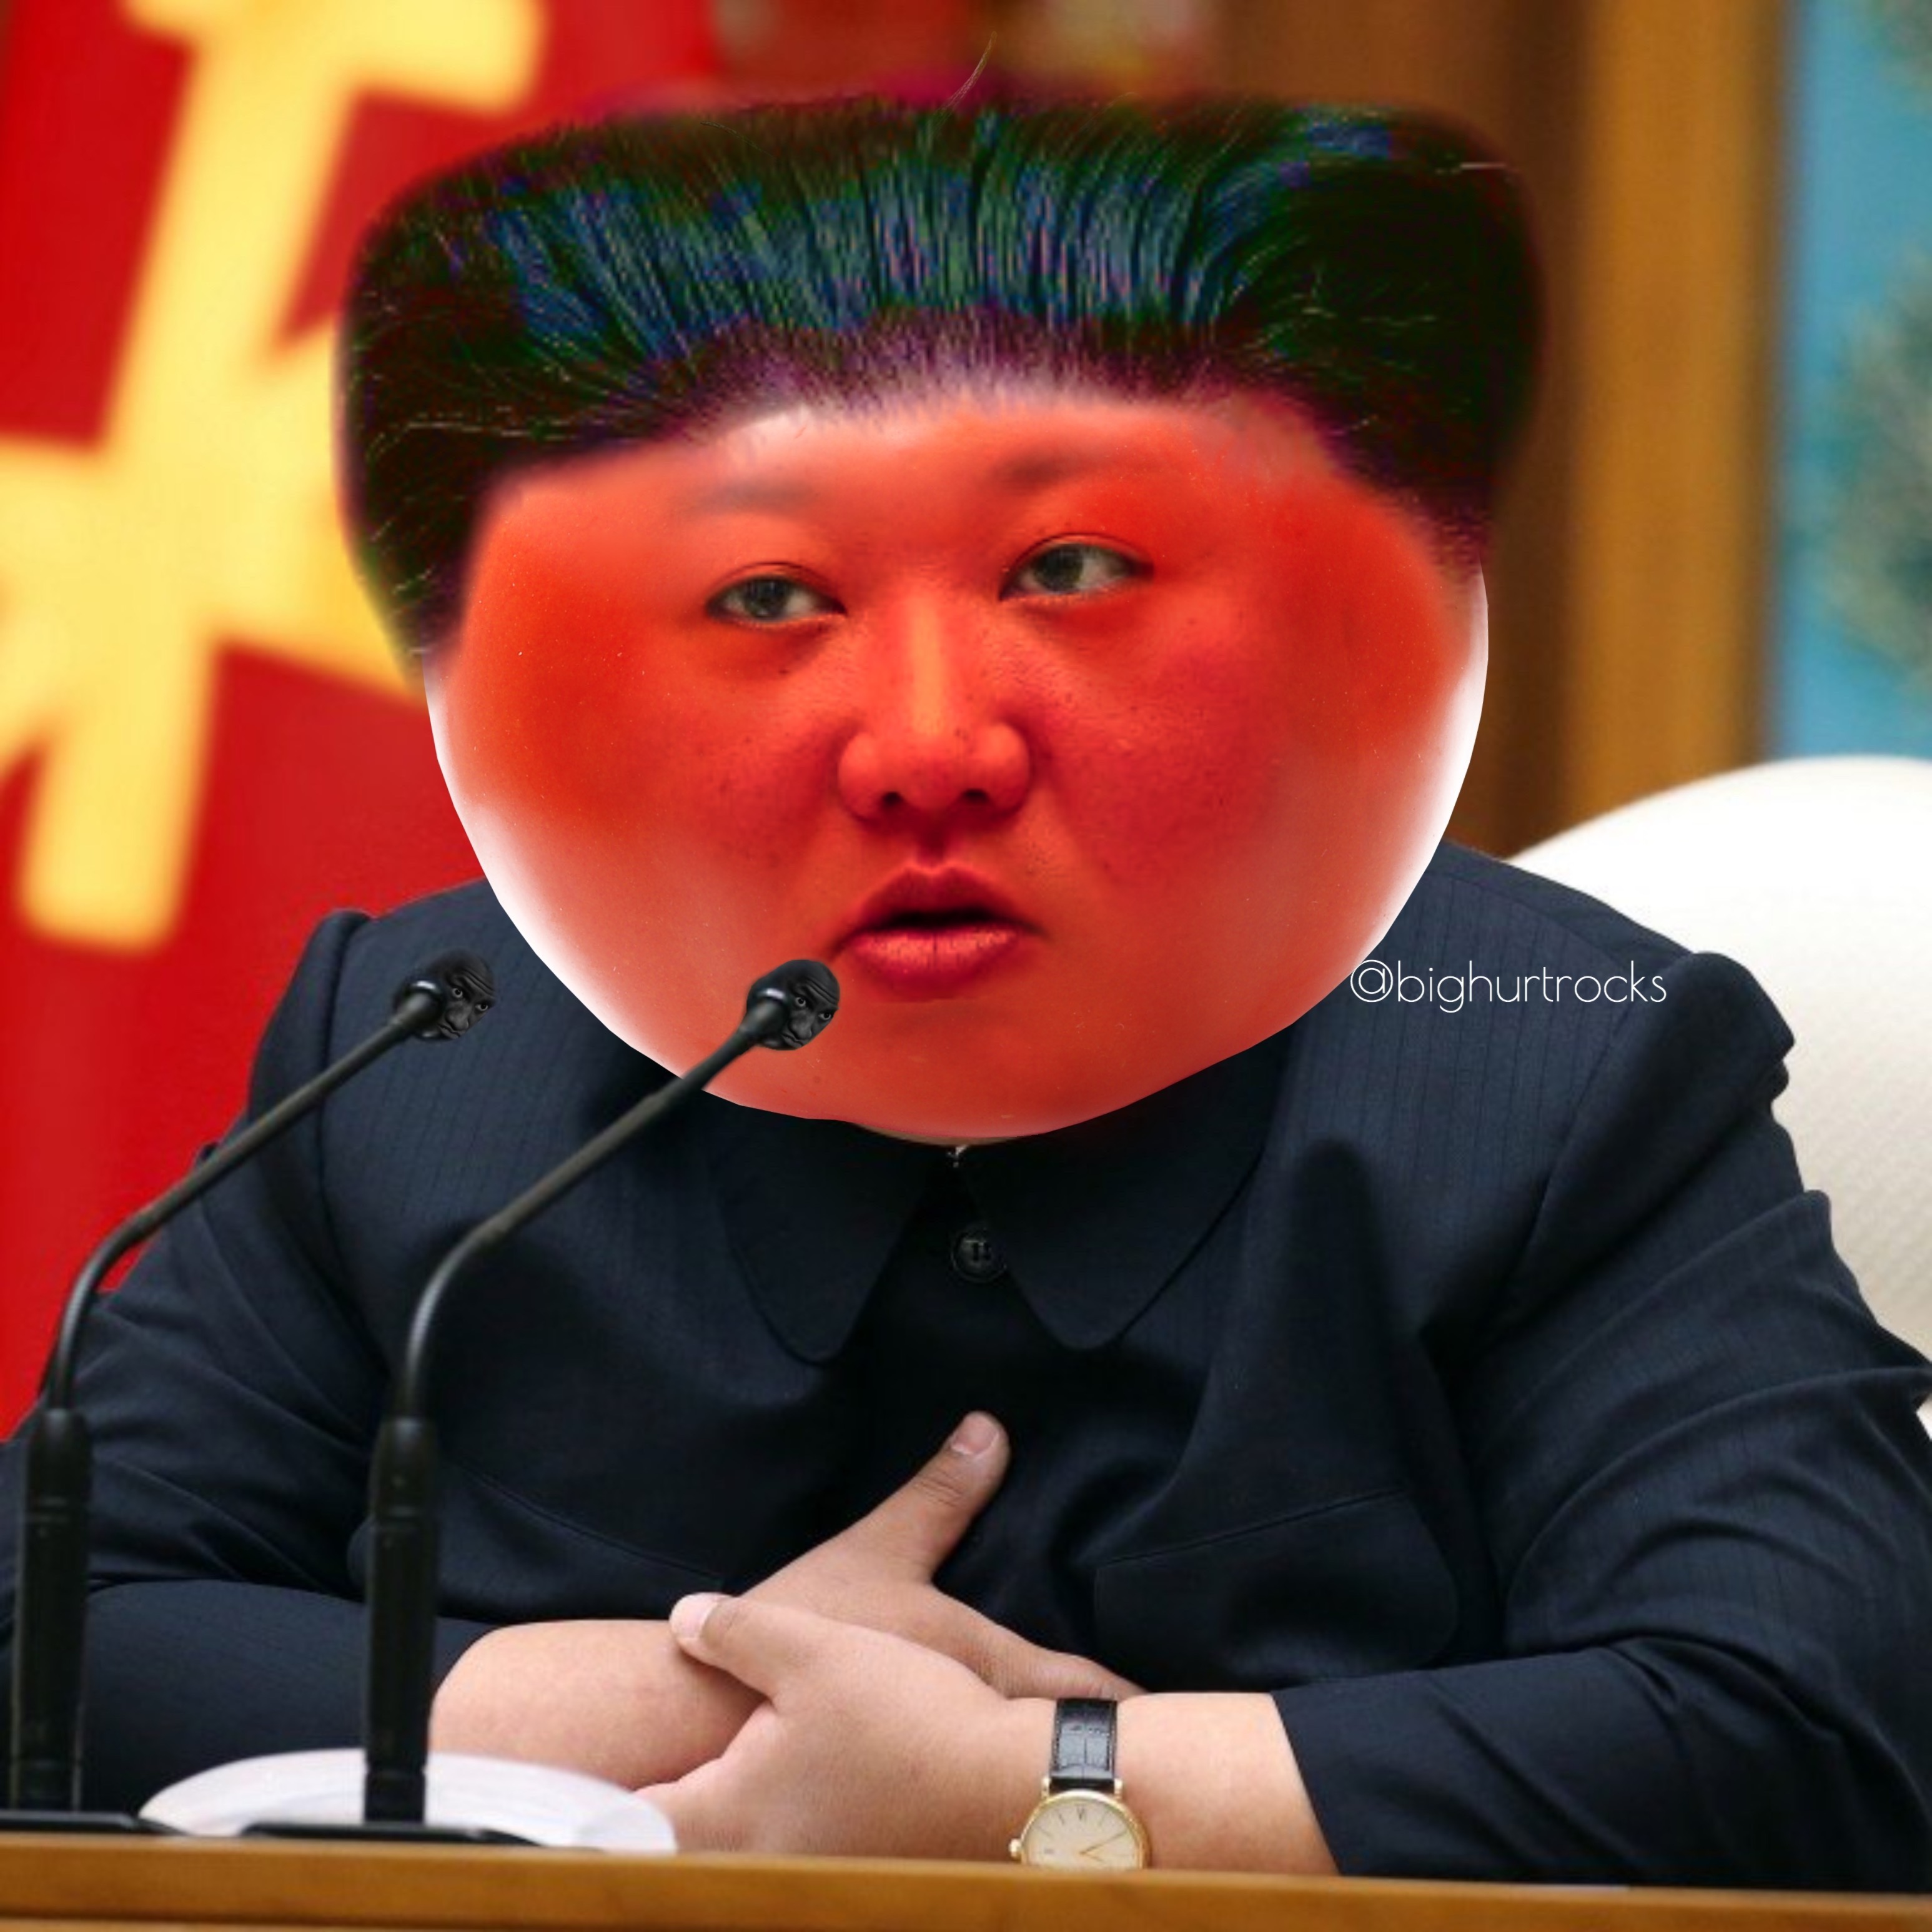 Kim Jong Un is dead/alive memes - Gallery